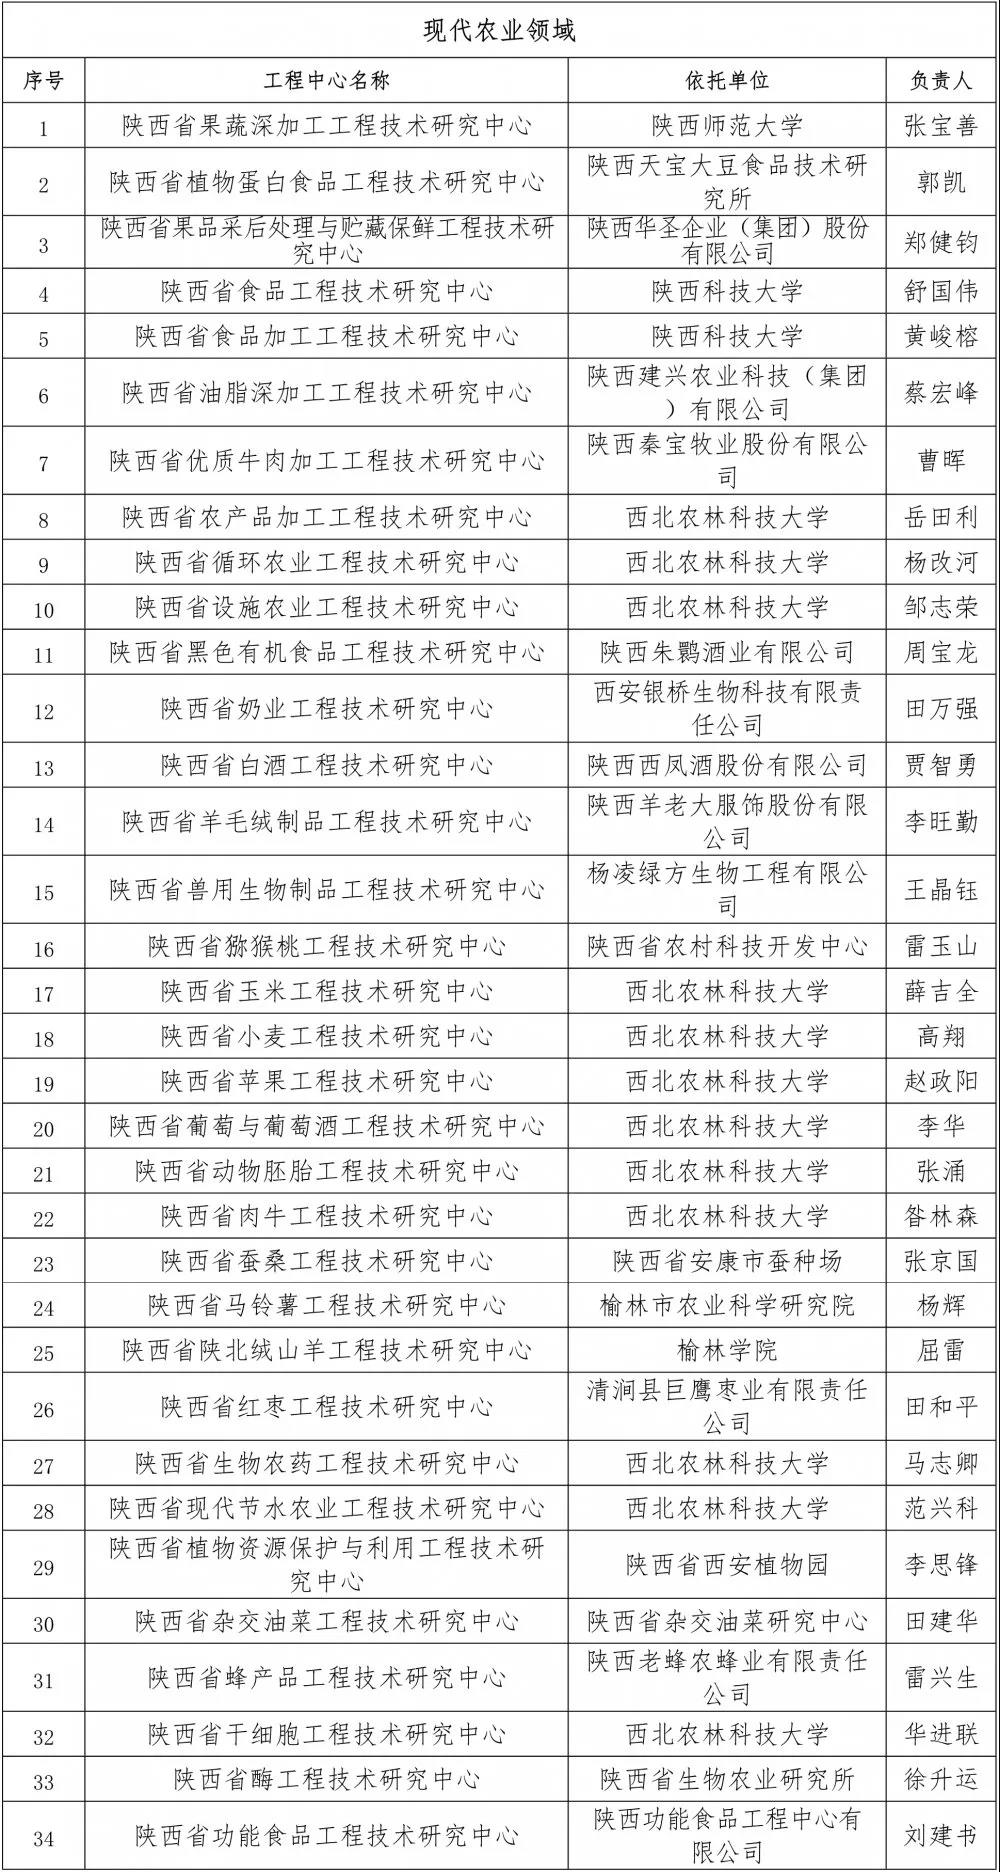 2021年度陕西省工程技术研究中心评估名单